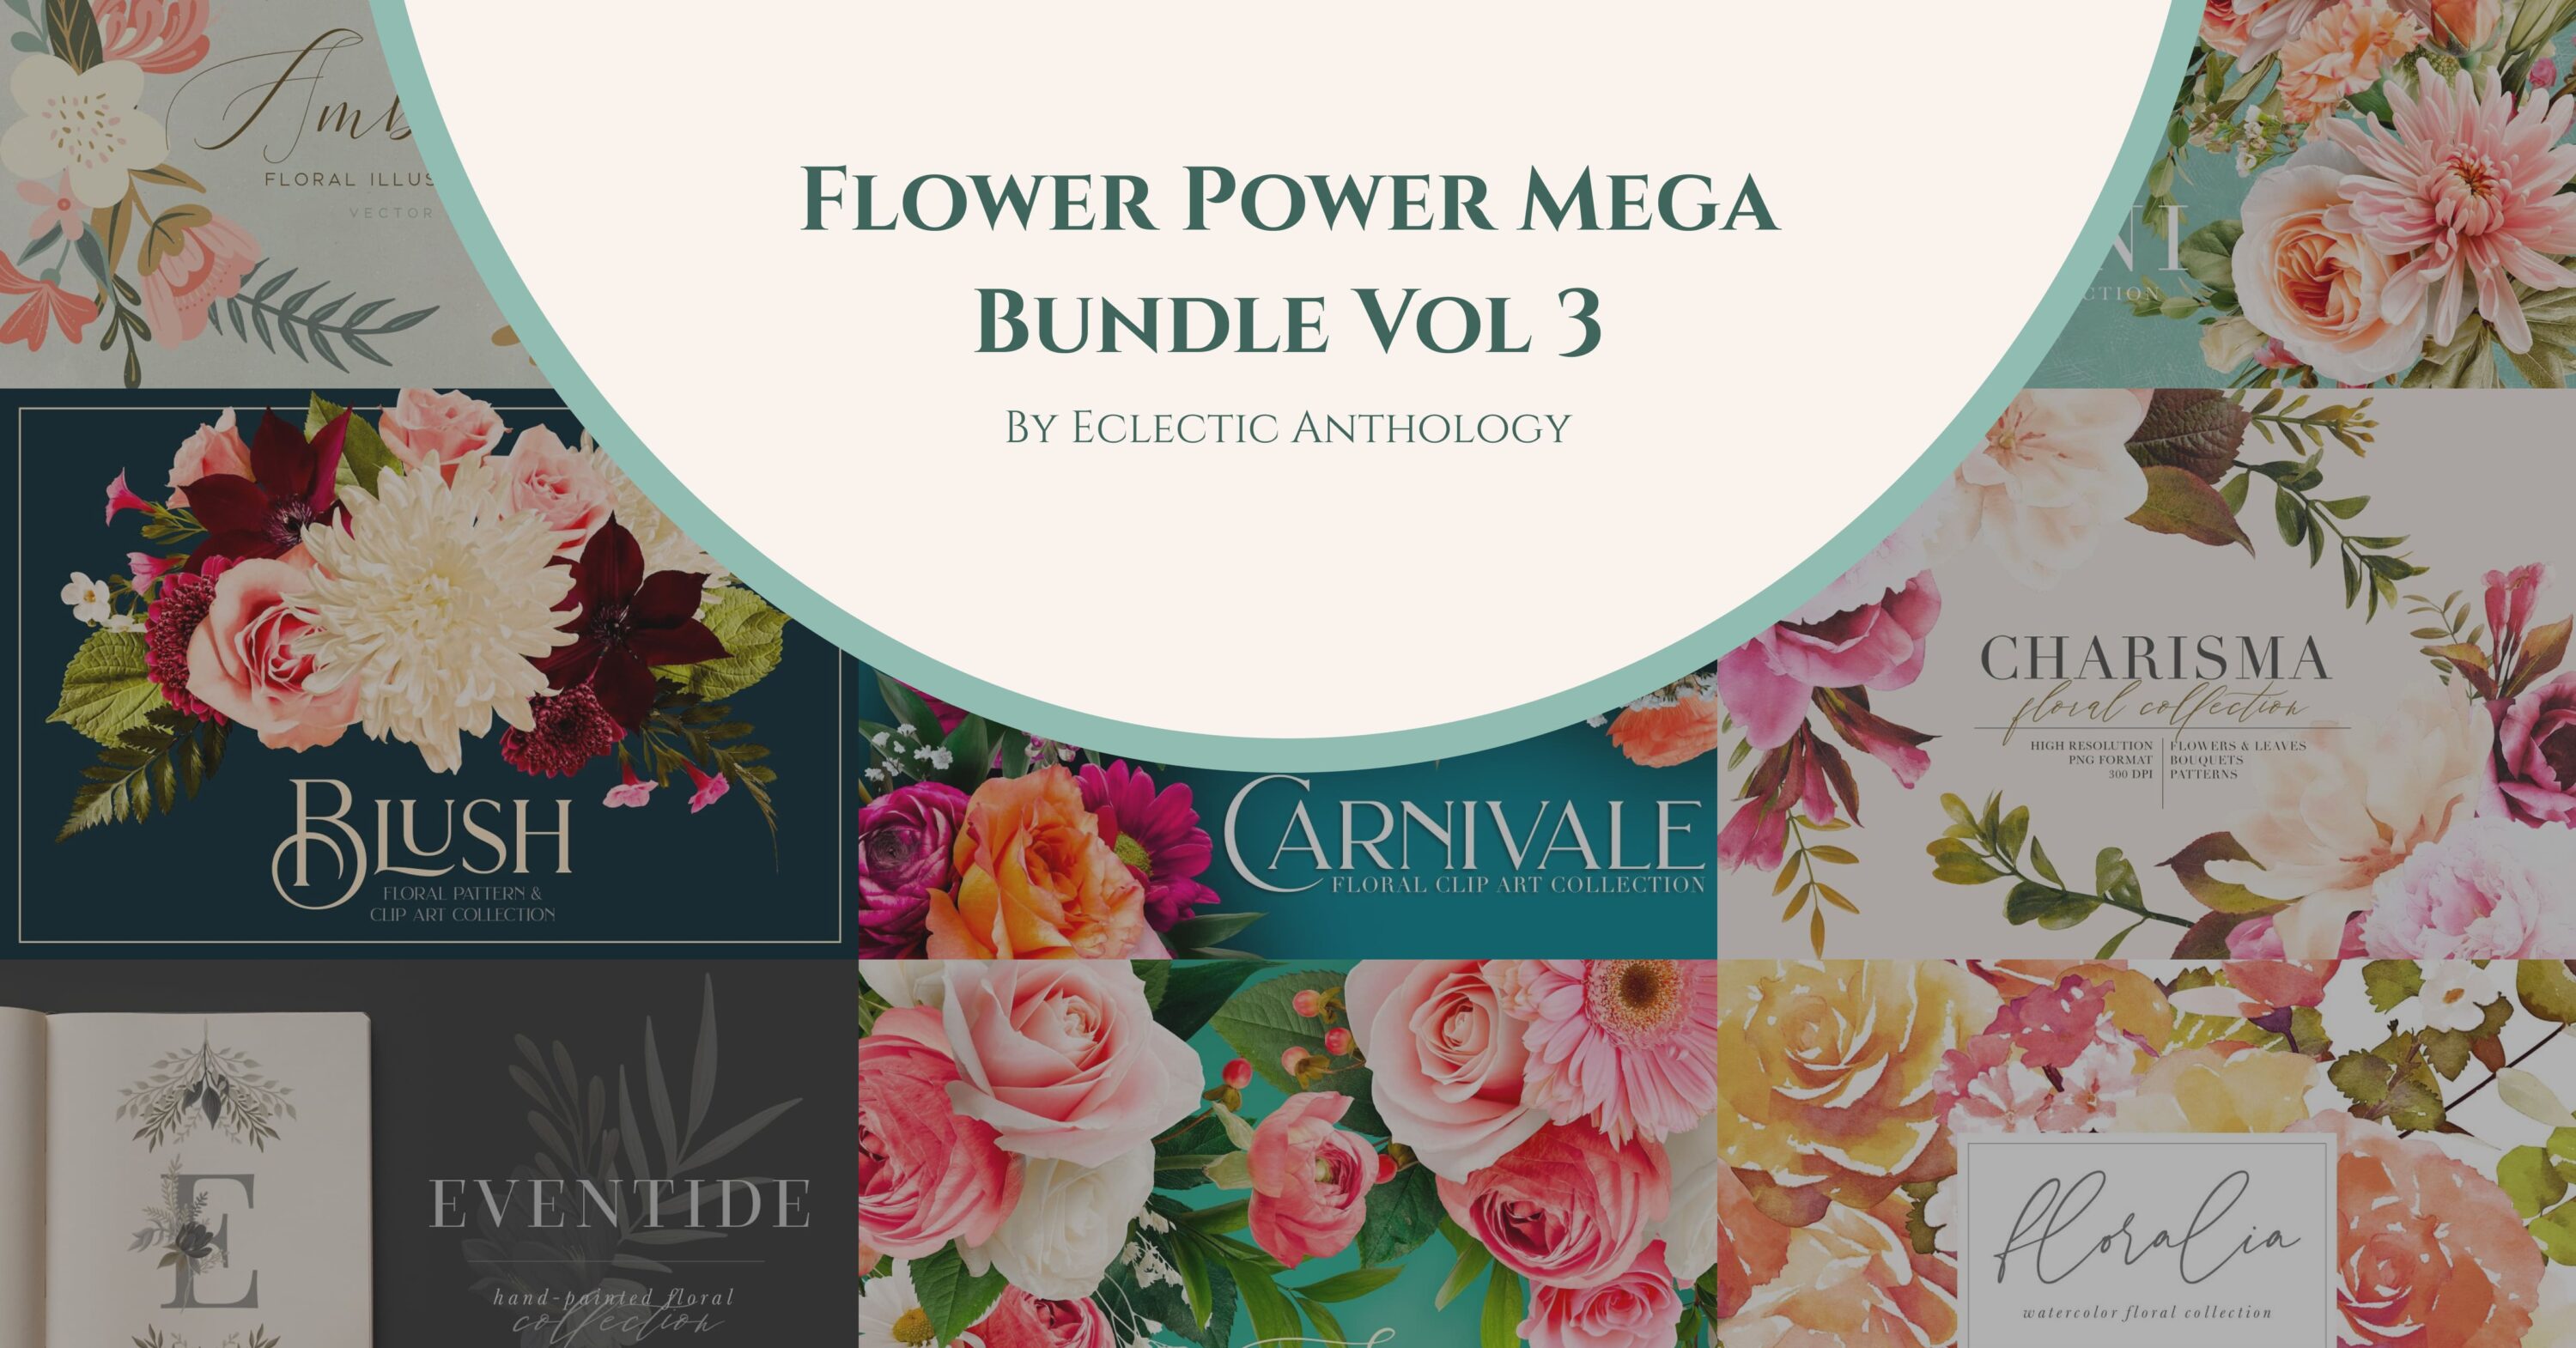 Flower Power Mega Bundle Vol 3 facebook image.